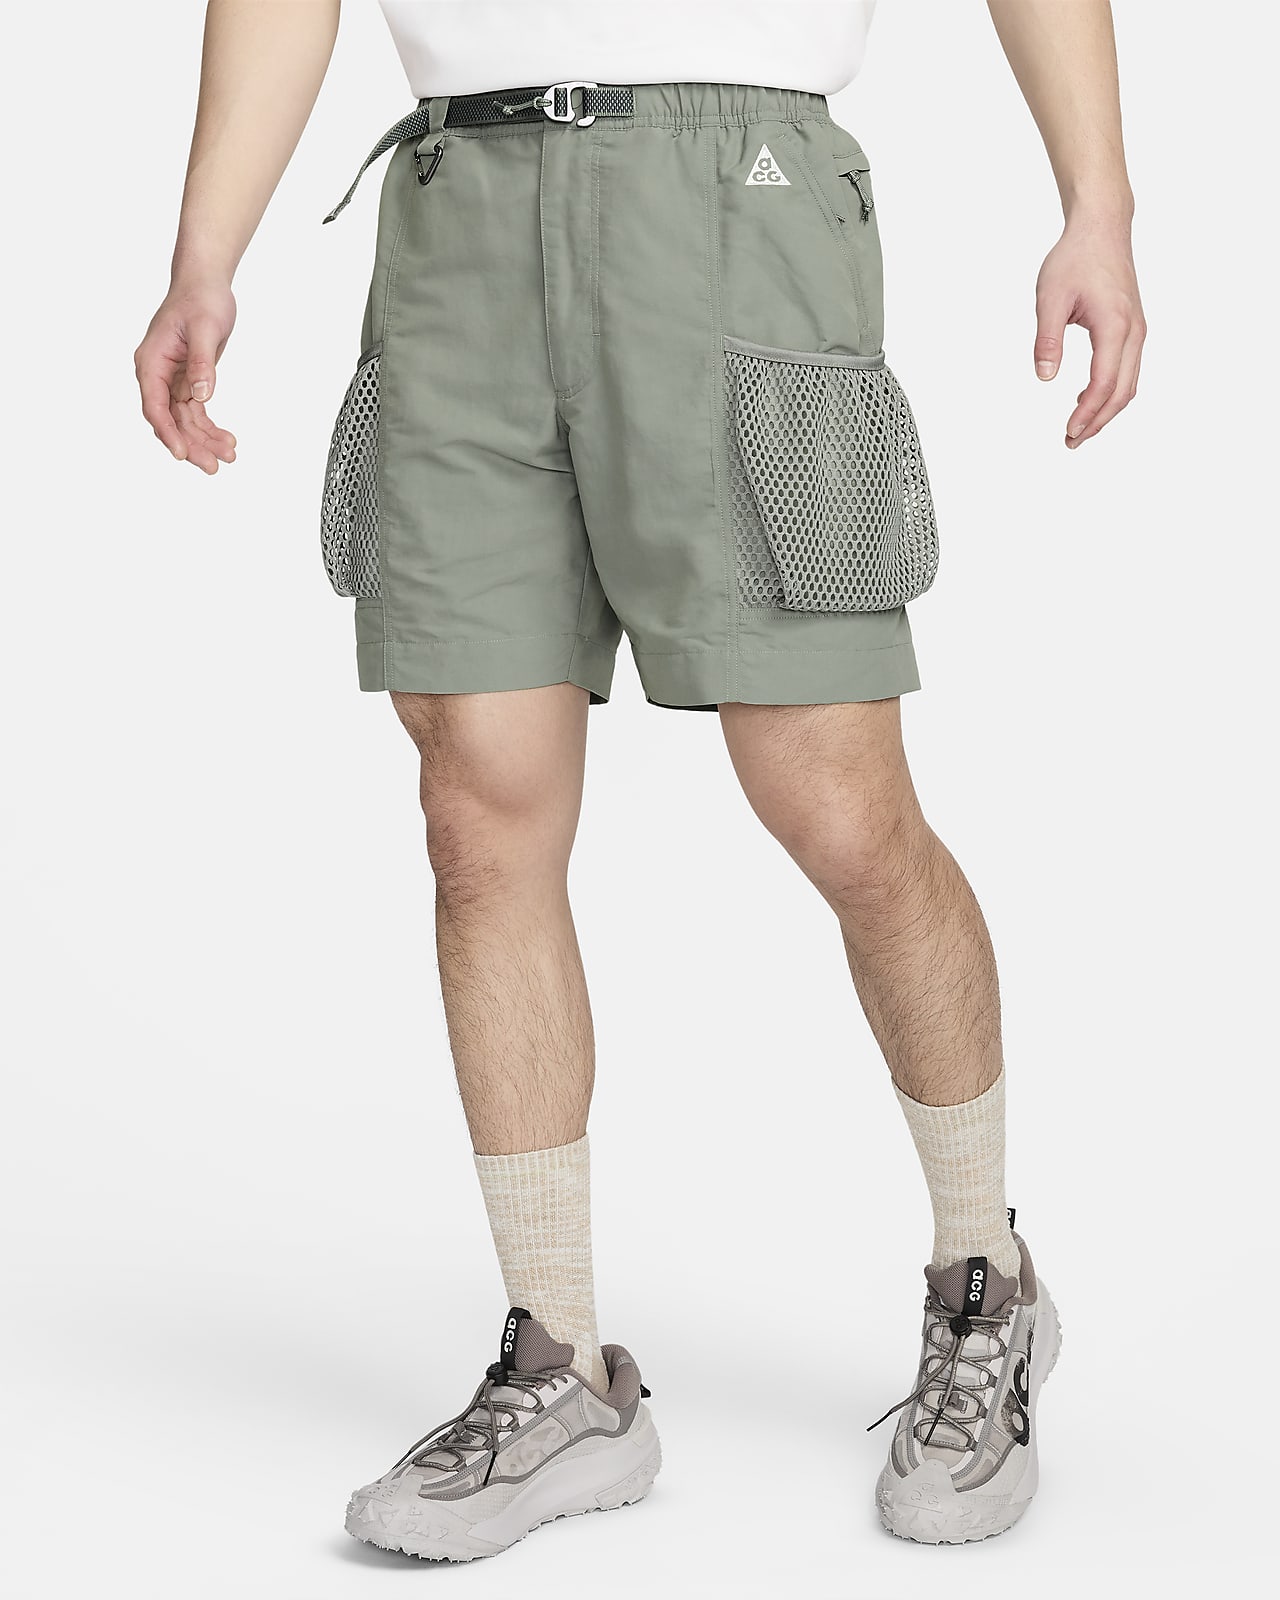 Nike ACG "Snowgrass" 男子拒水户外多口袋工装短裤